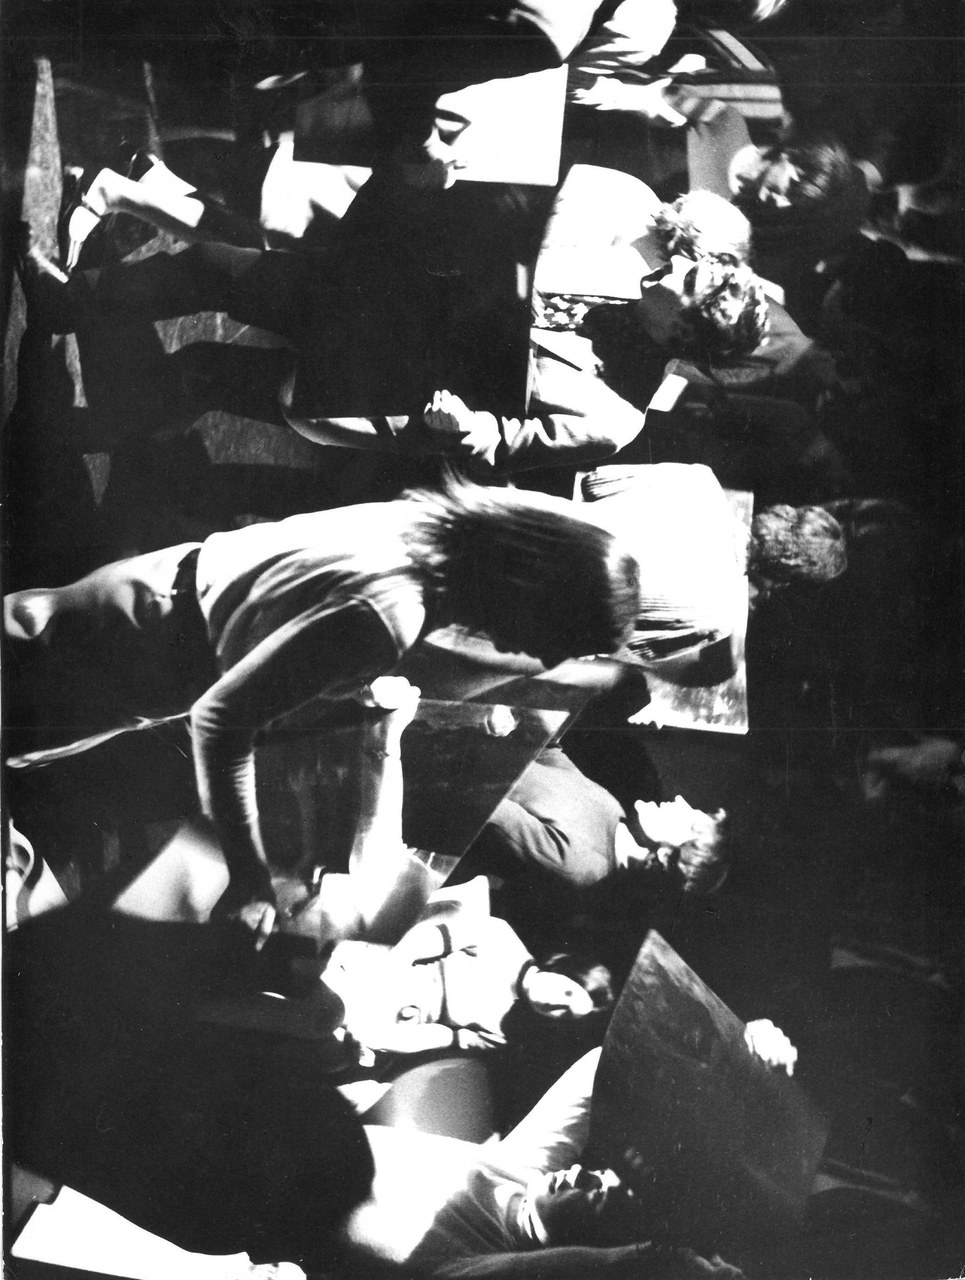 Renato Rinaldi, La fine di Pistoletto, 6 marzo 1967, Courtesy Archivio Pistoletto, Biella